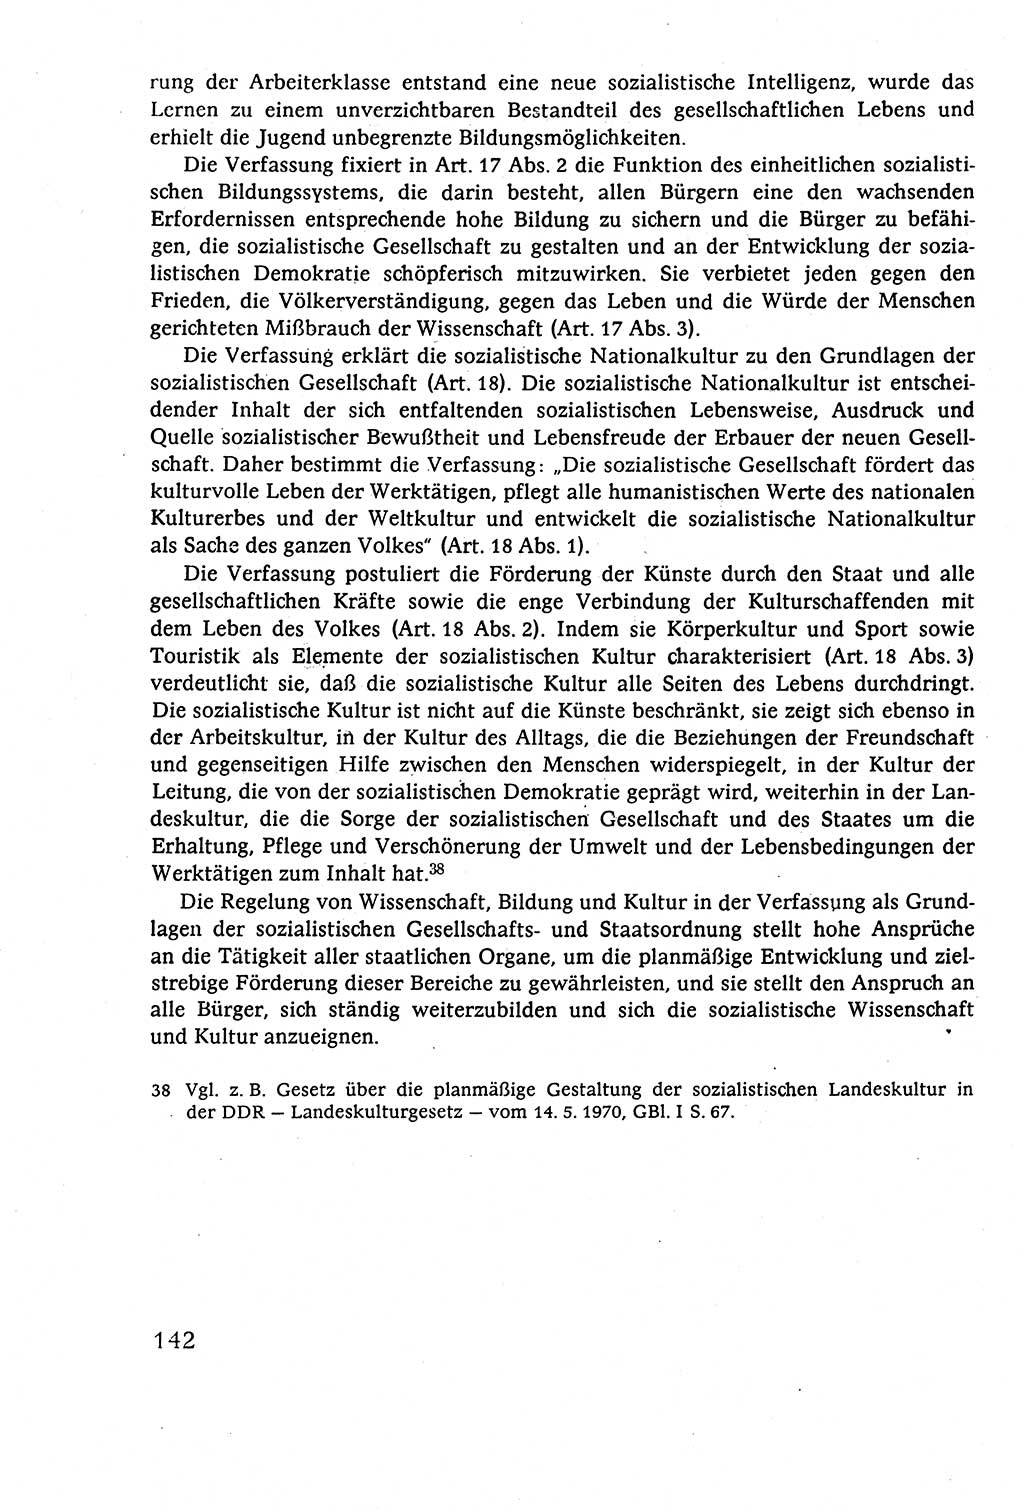 Staatsrecht der DDR (Deutsche Demokratische Republik), Lehrbuch 1977, Seite 142 (St.-R. DDR Lb. 1977, S. 142)